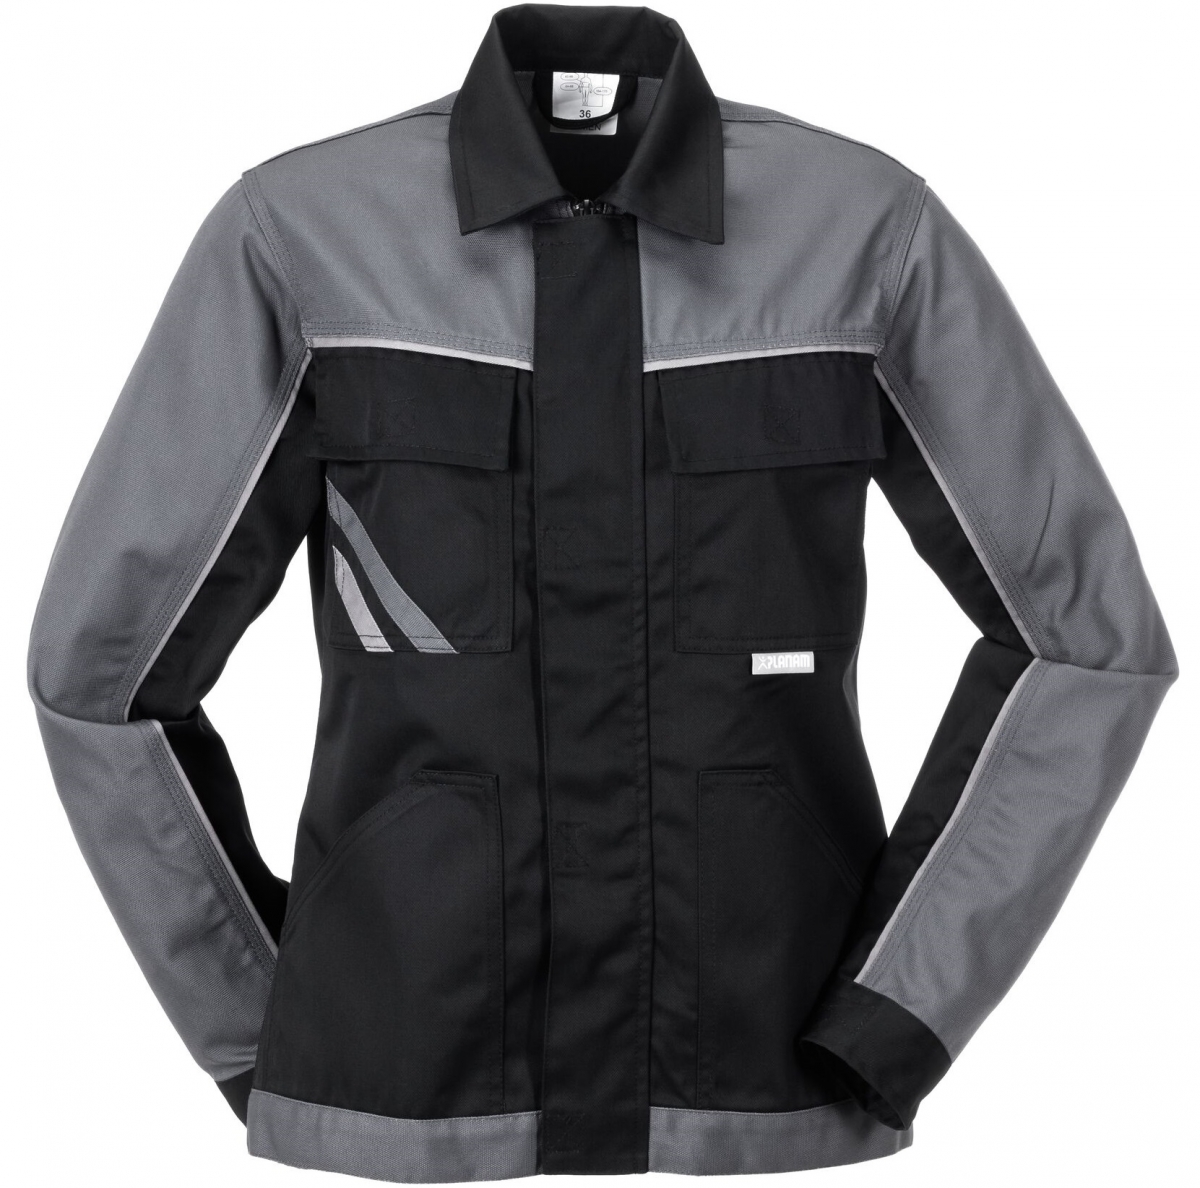 PLANAM-Workwear, Damen-Bundjacke, Highline, 285 g/m, schwarz/schiefer/zink